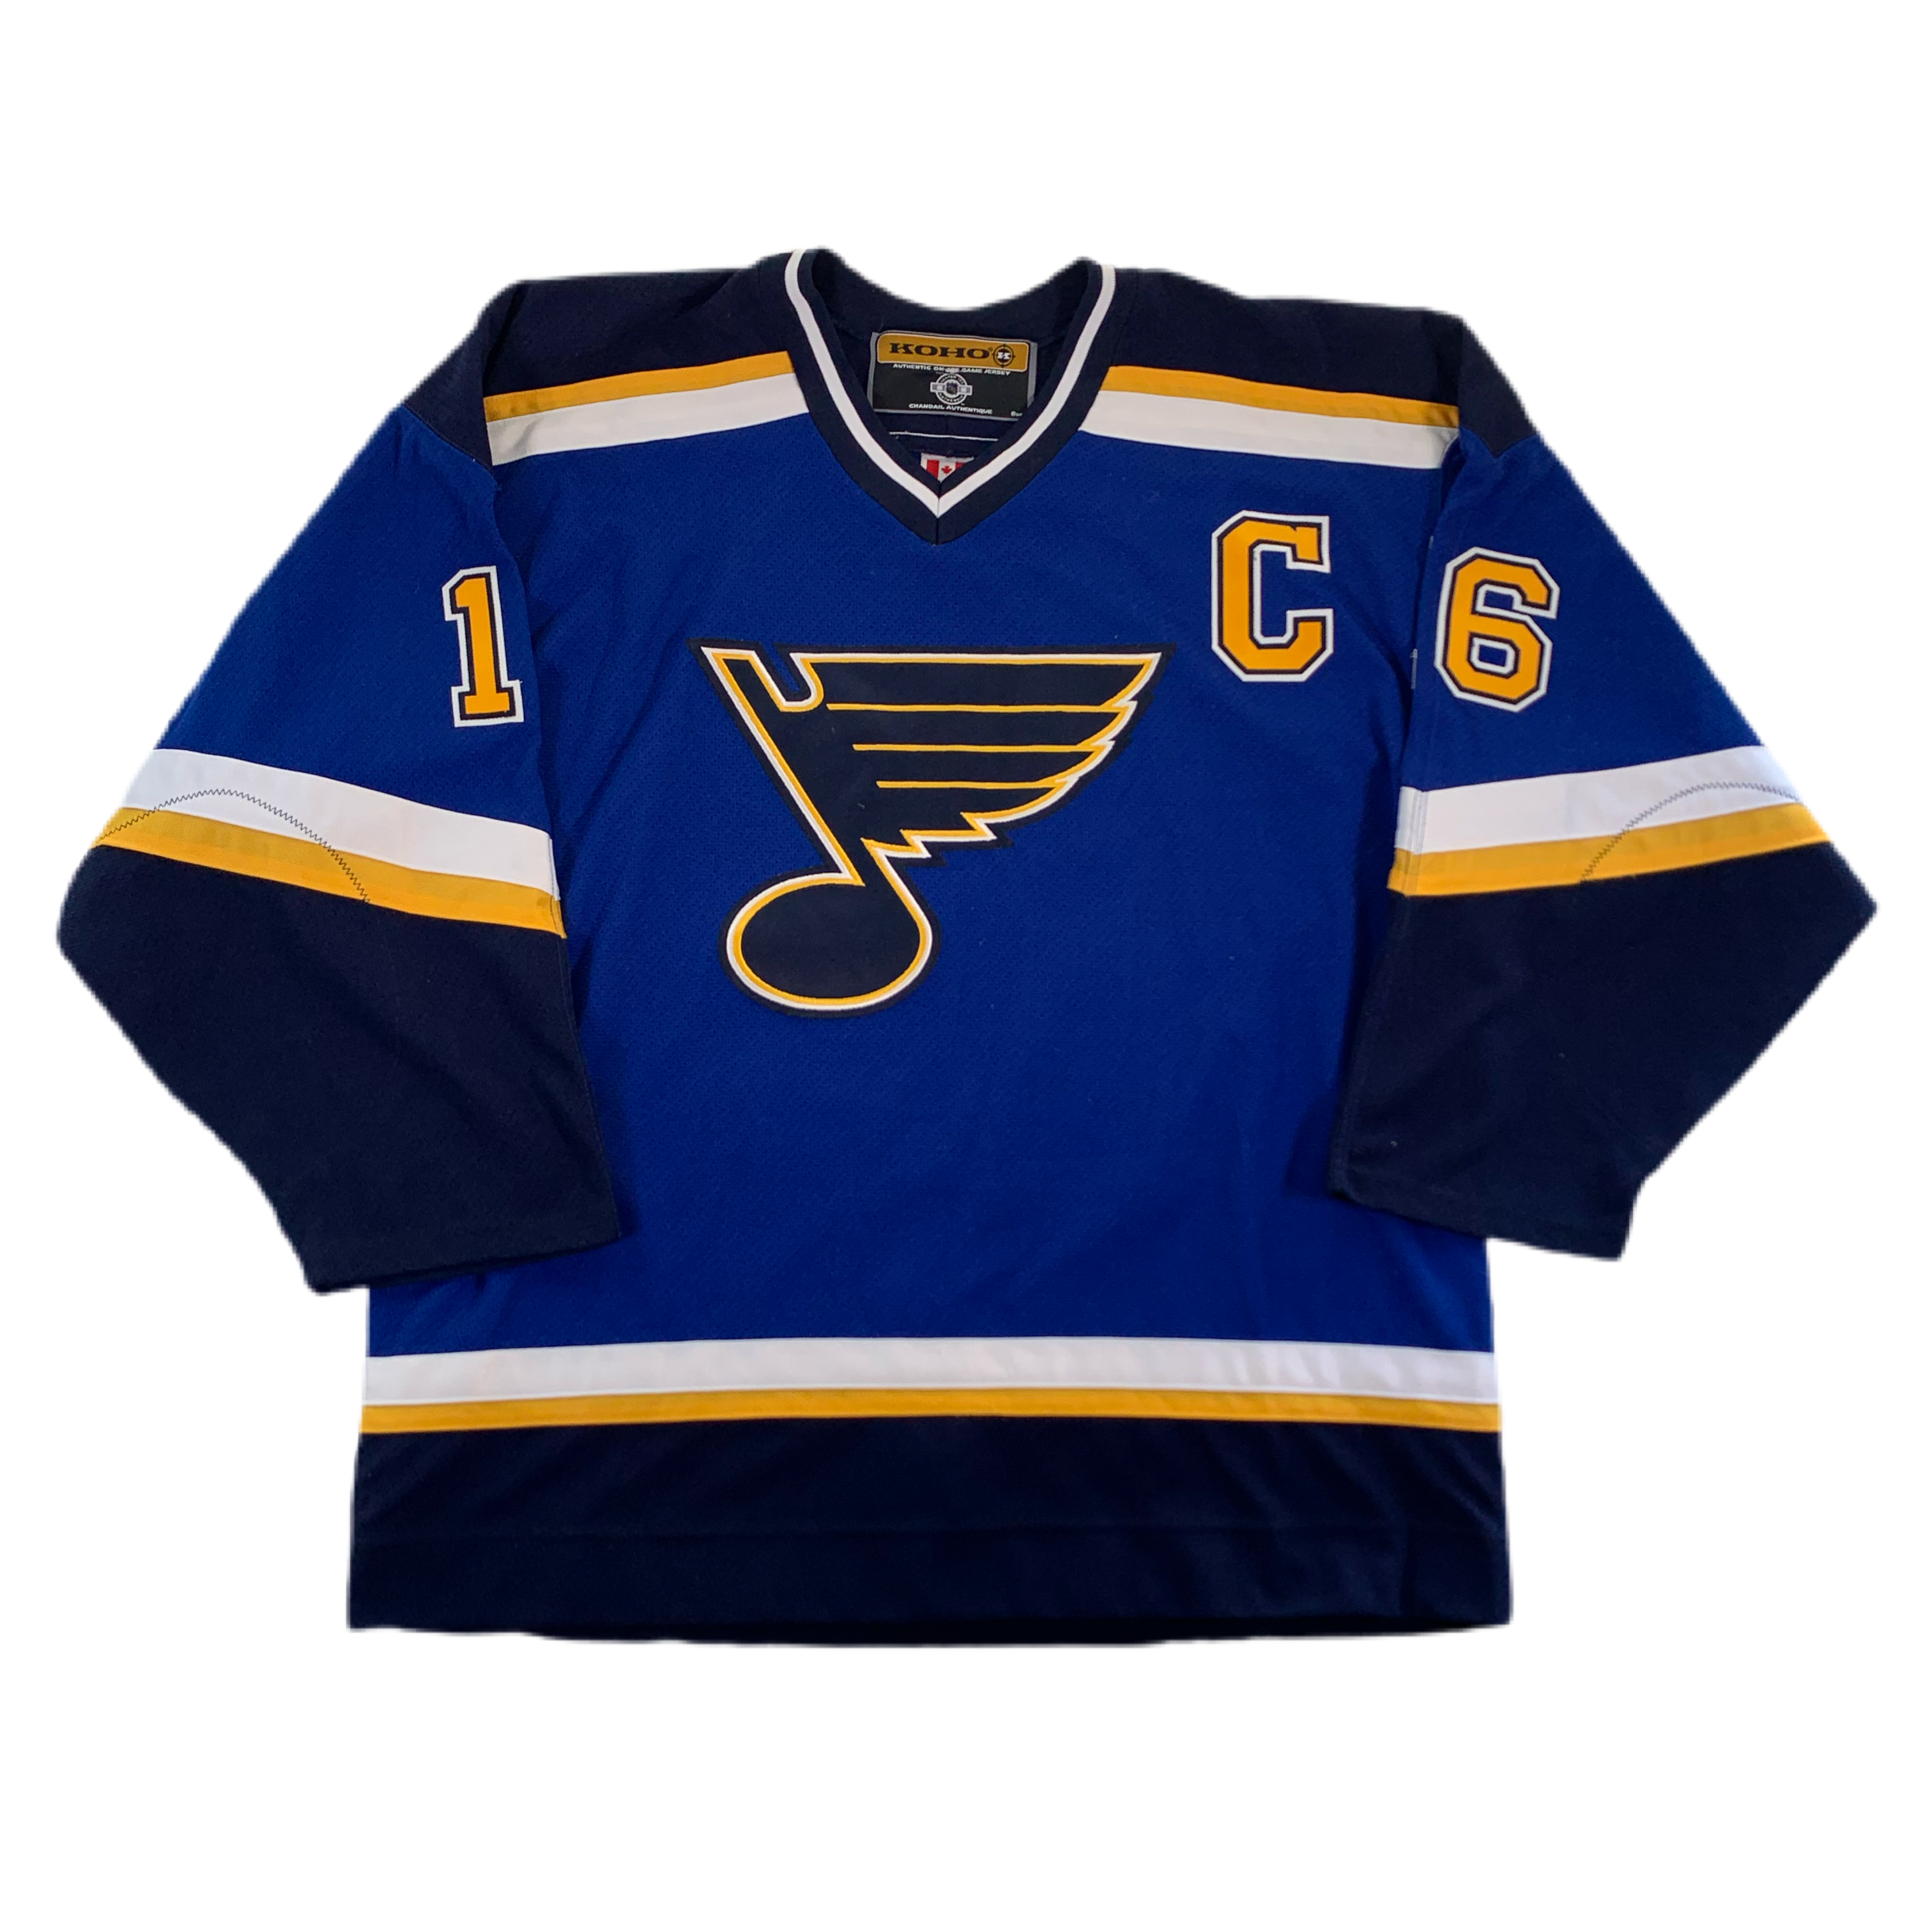 St. Louis Blues unveil new jerseys